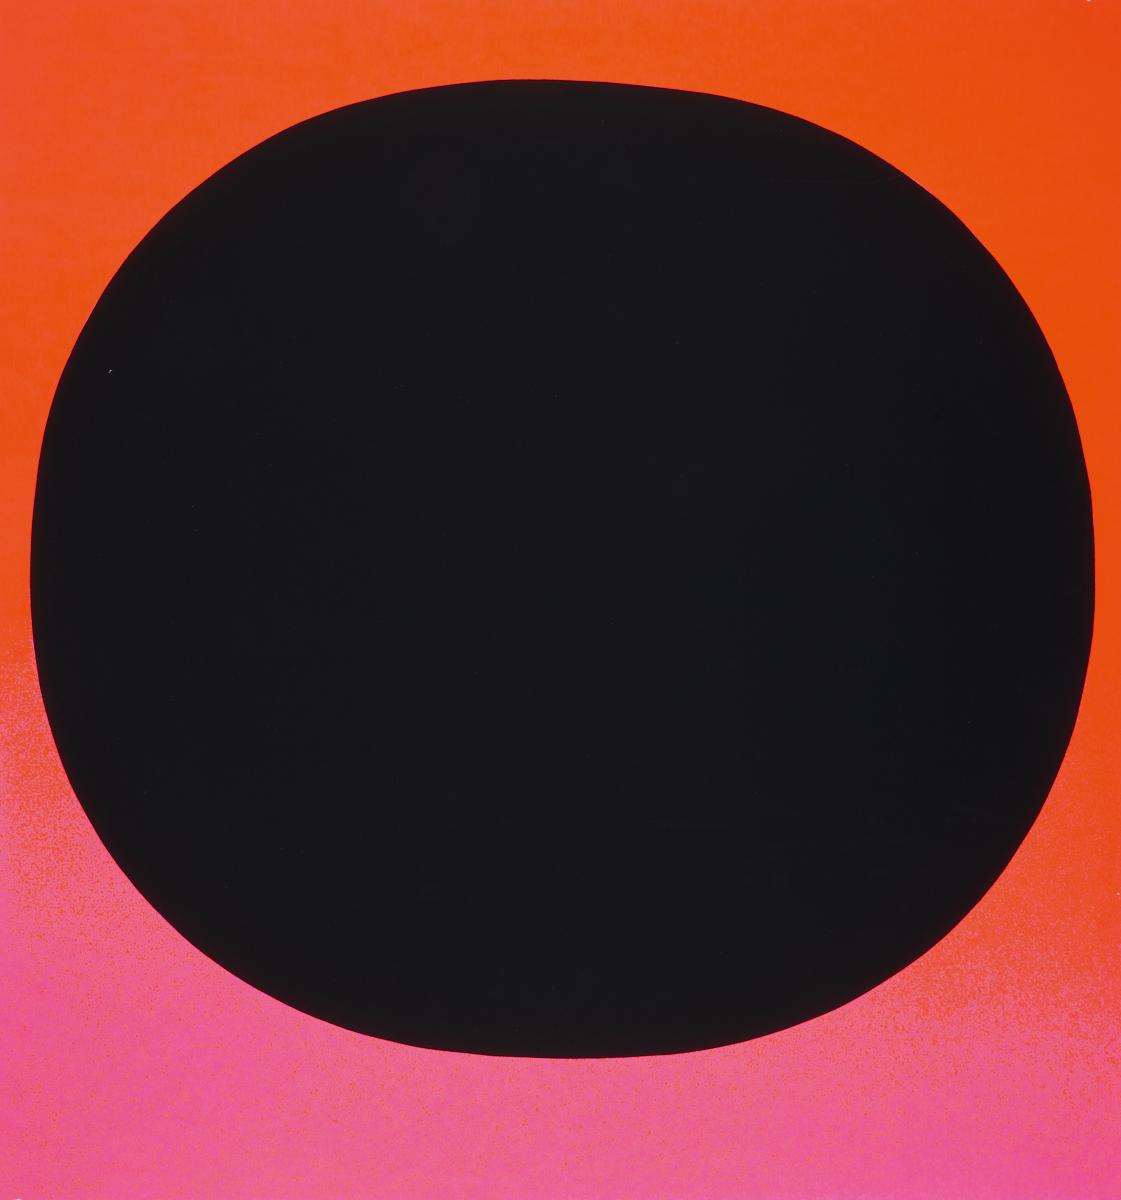 Rupprecht Geiger - Rundes Schwarzschwarz auf leuchtrot kalt bis rot-orange, 57604-2, Van Ham Kunstauktionen